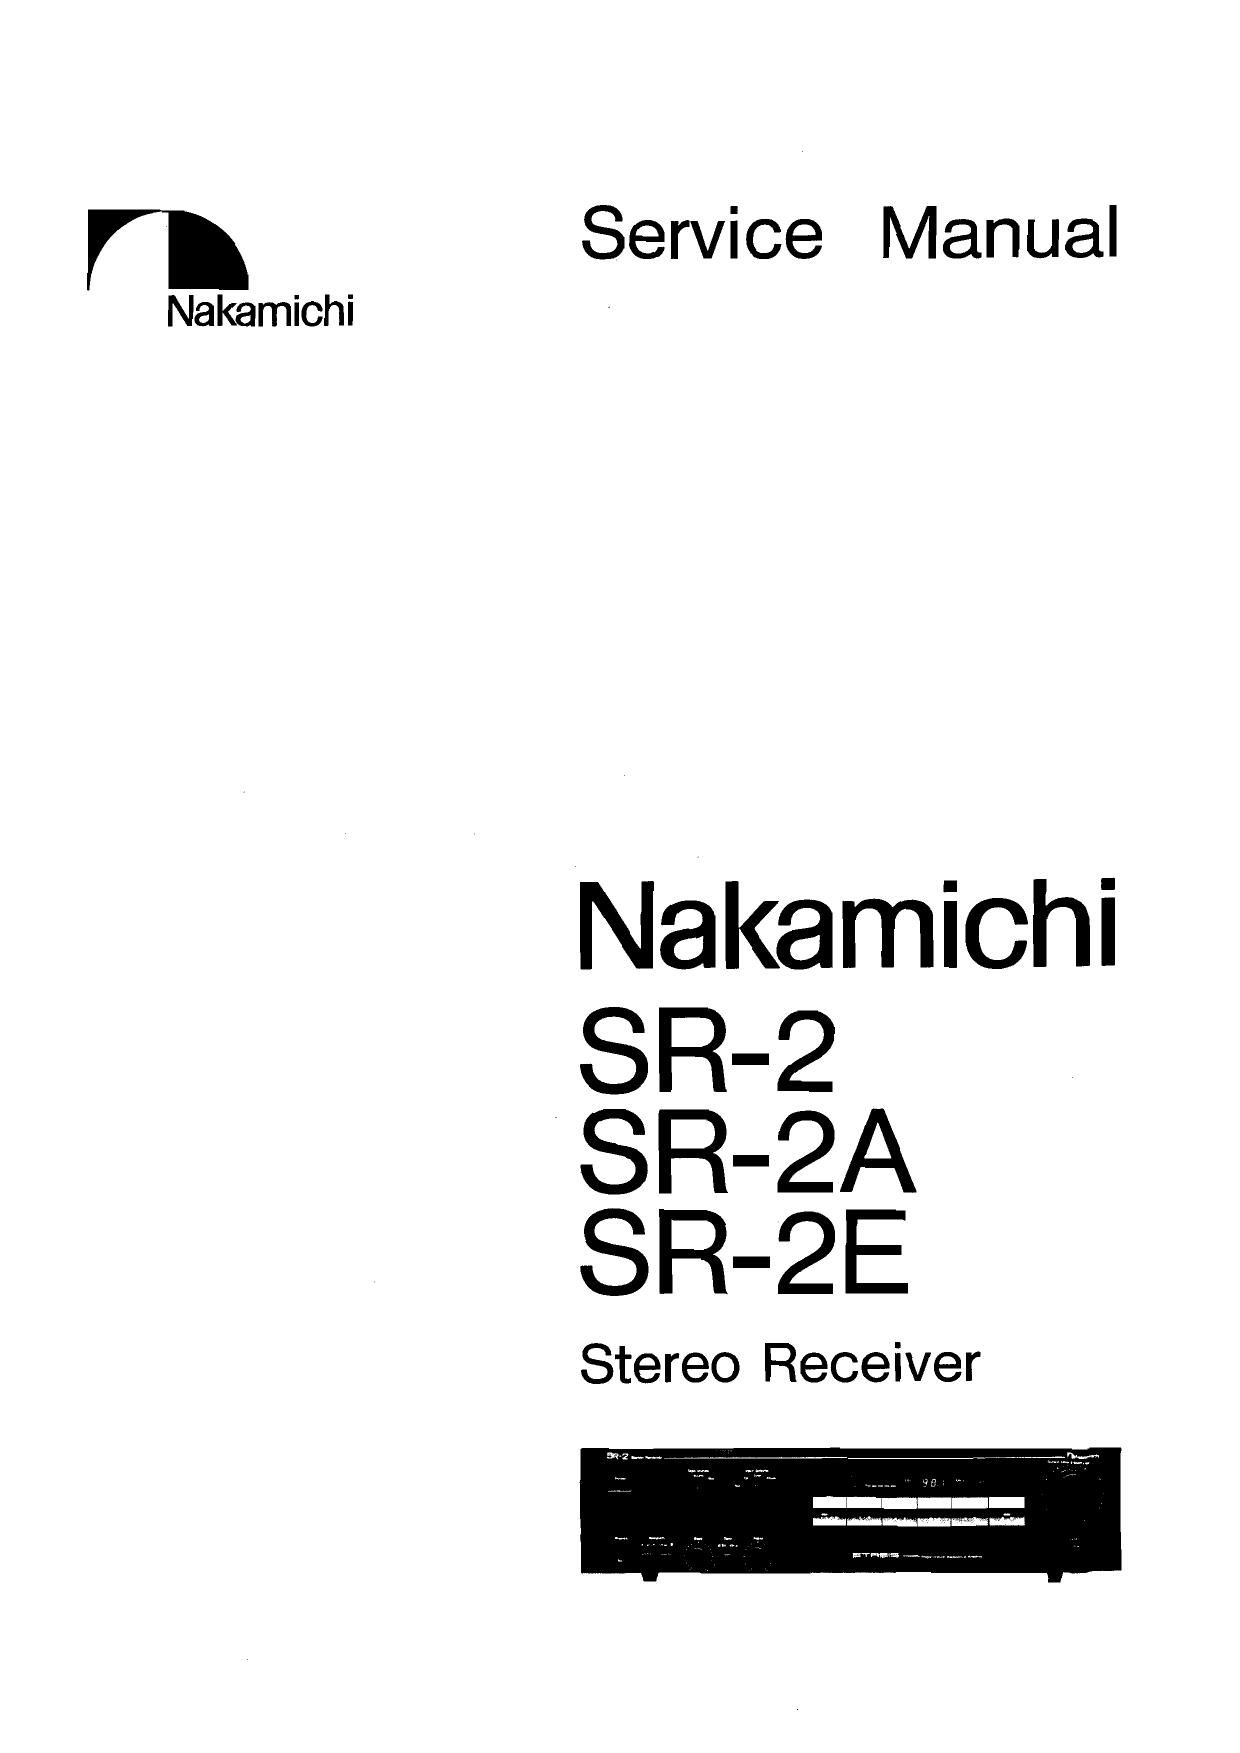 Nakamichi SR 2 A Service Manual